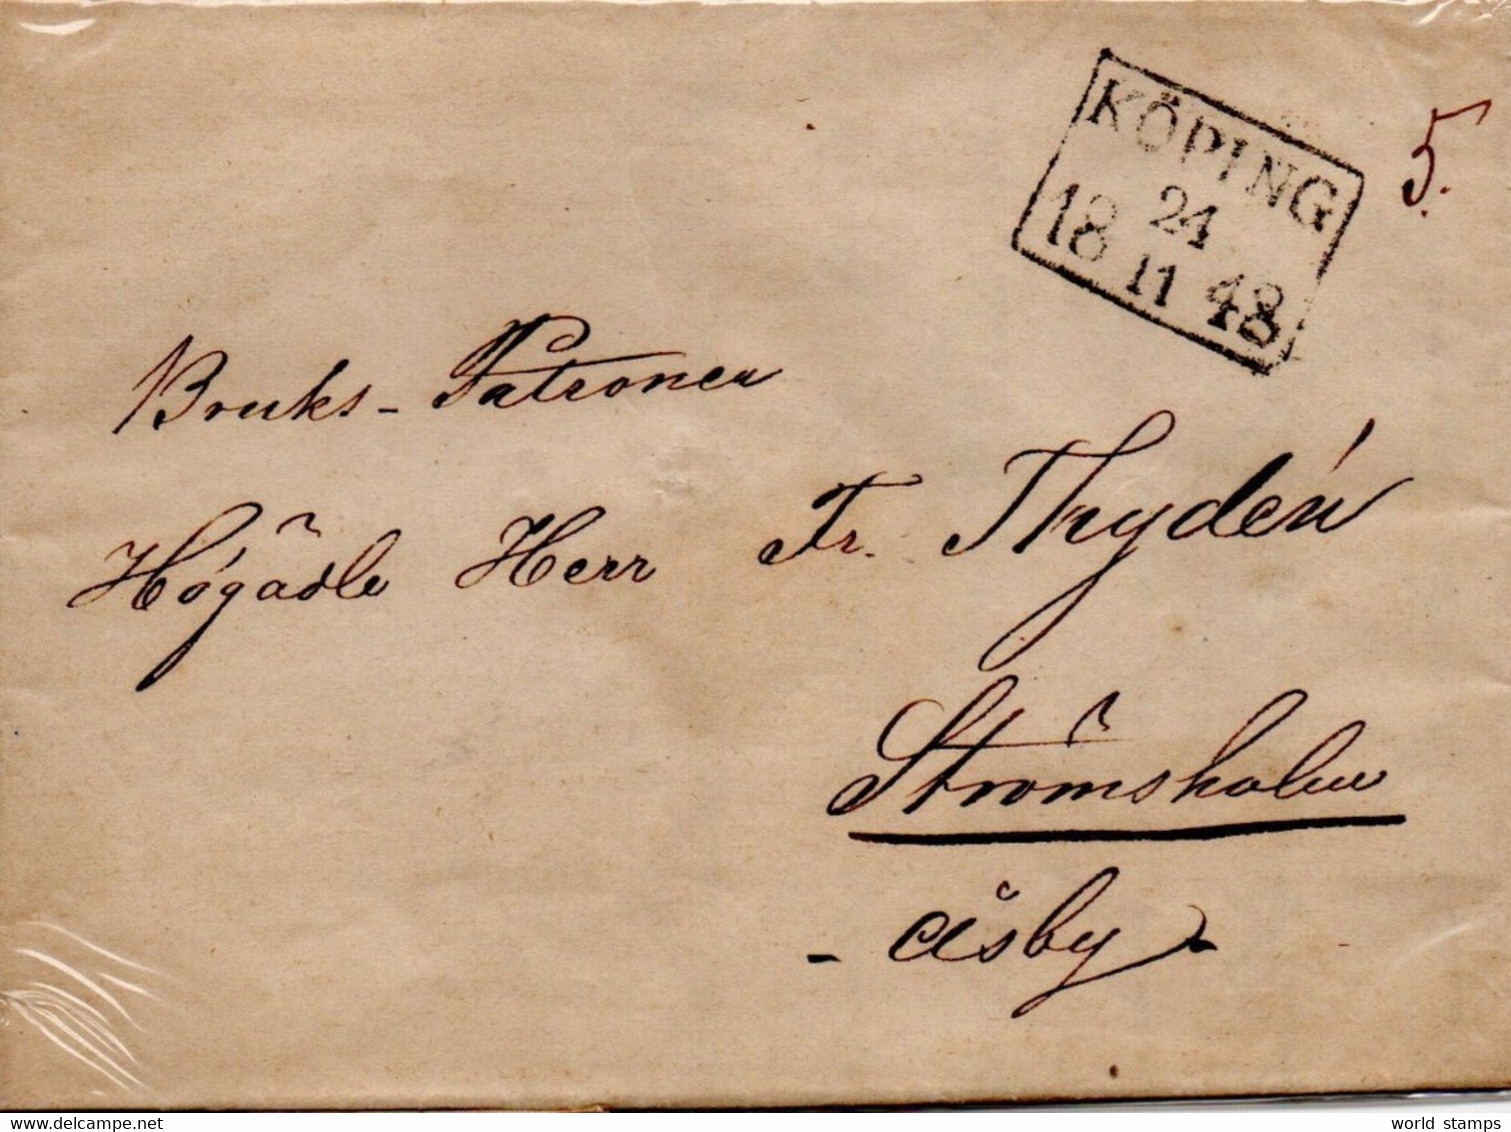 SUEDE 24/11/1848 KOPING-STROMSHOLM - ... - 1855 Préphilatélie